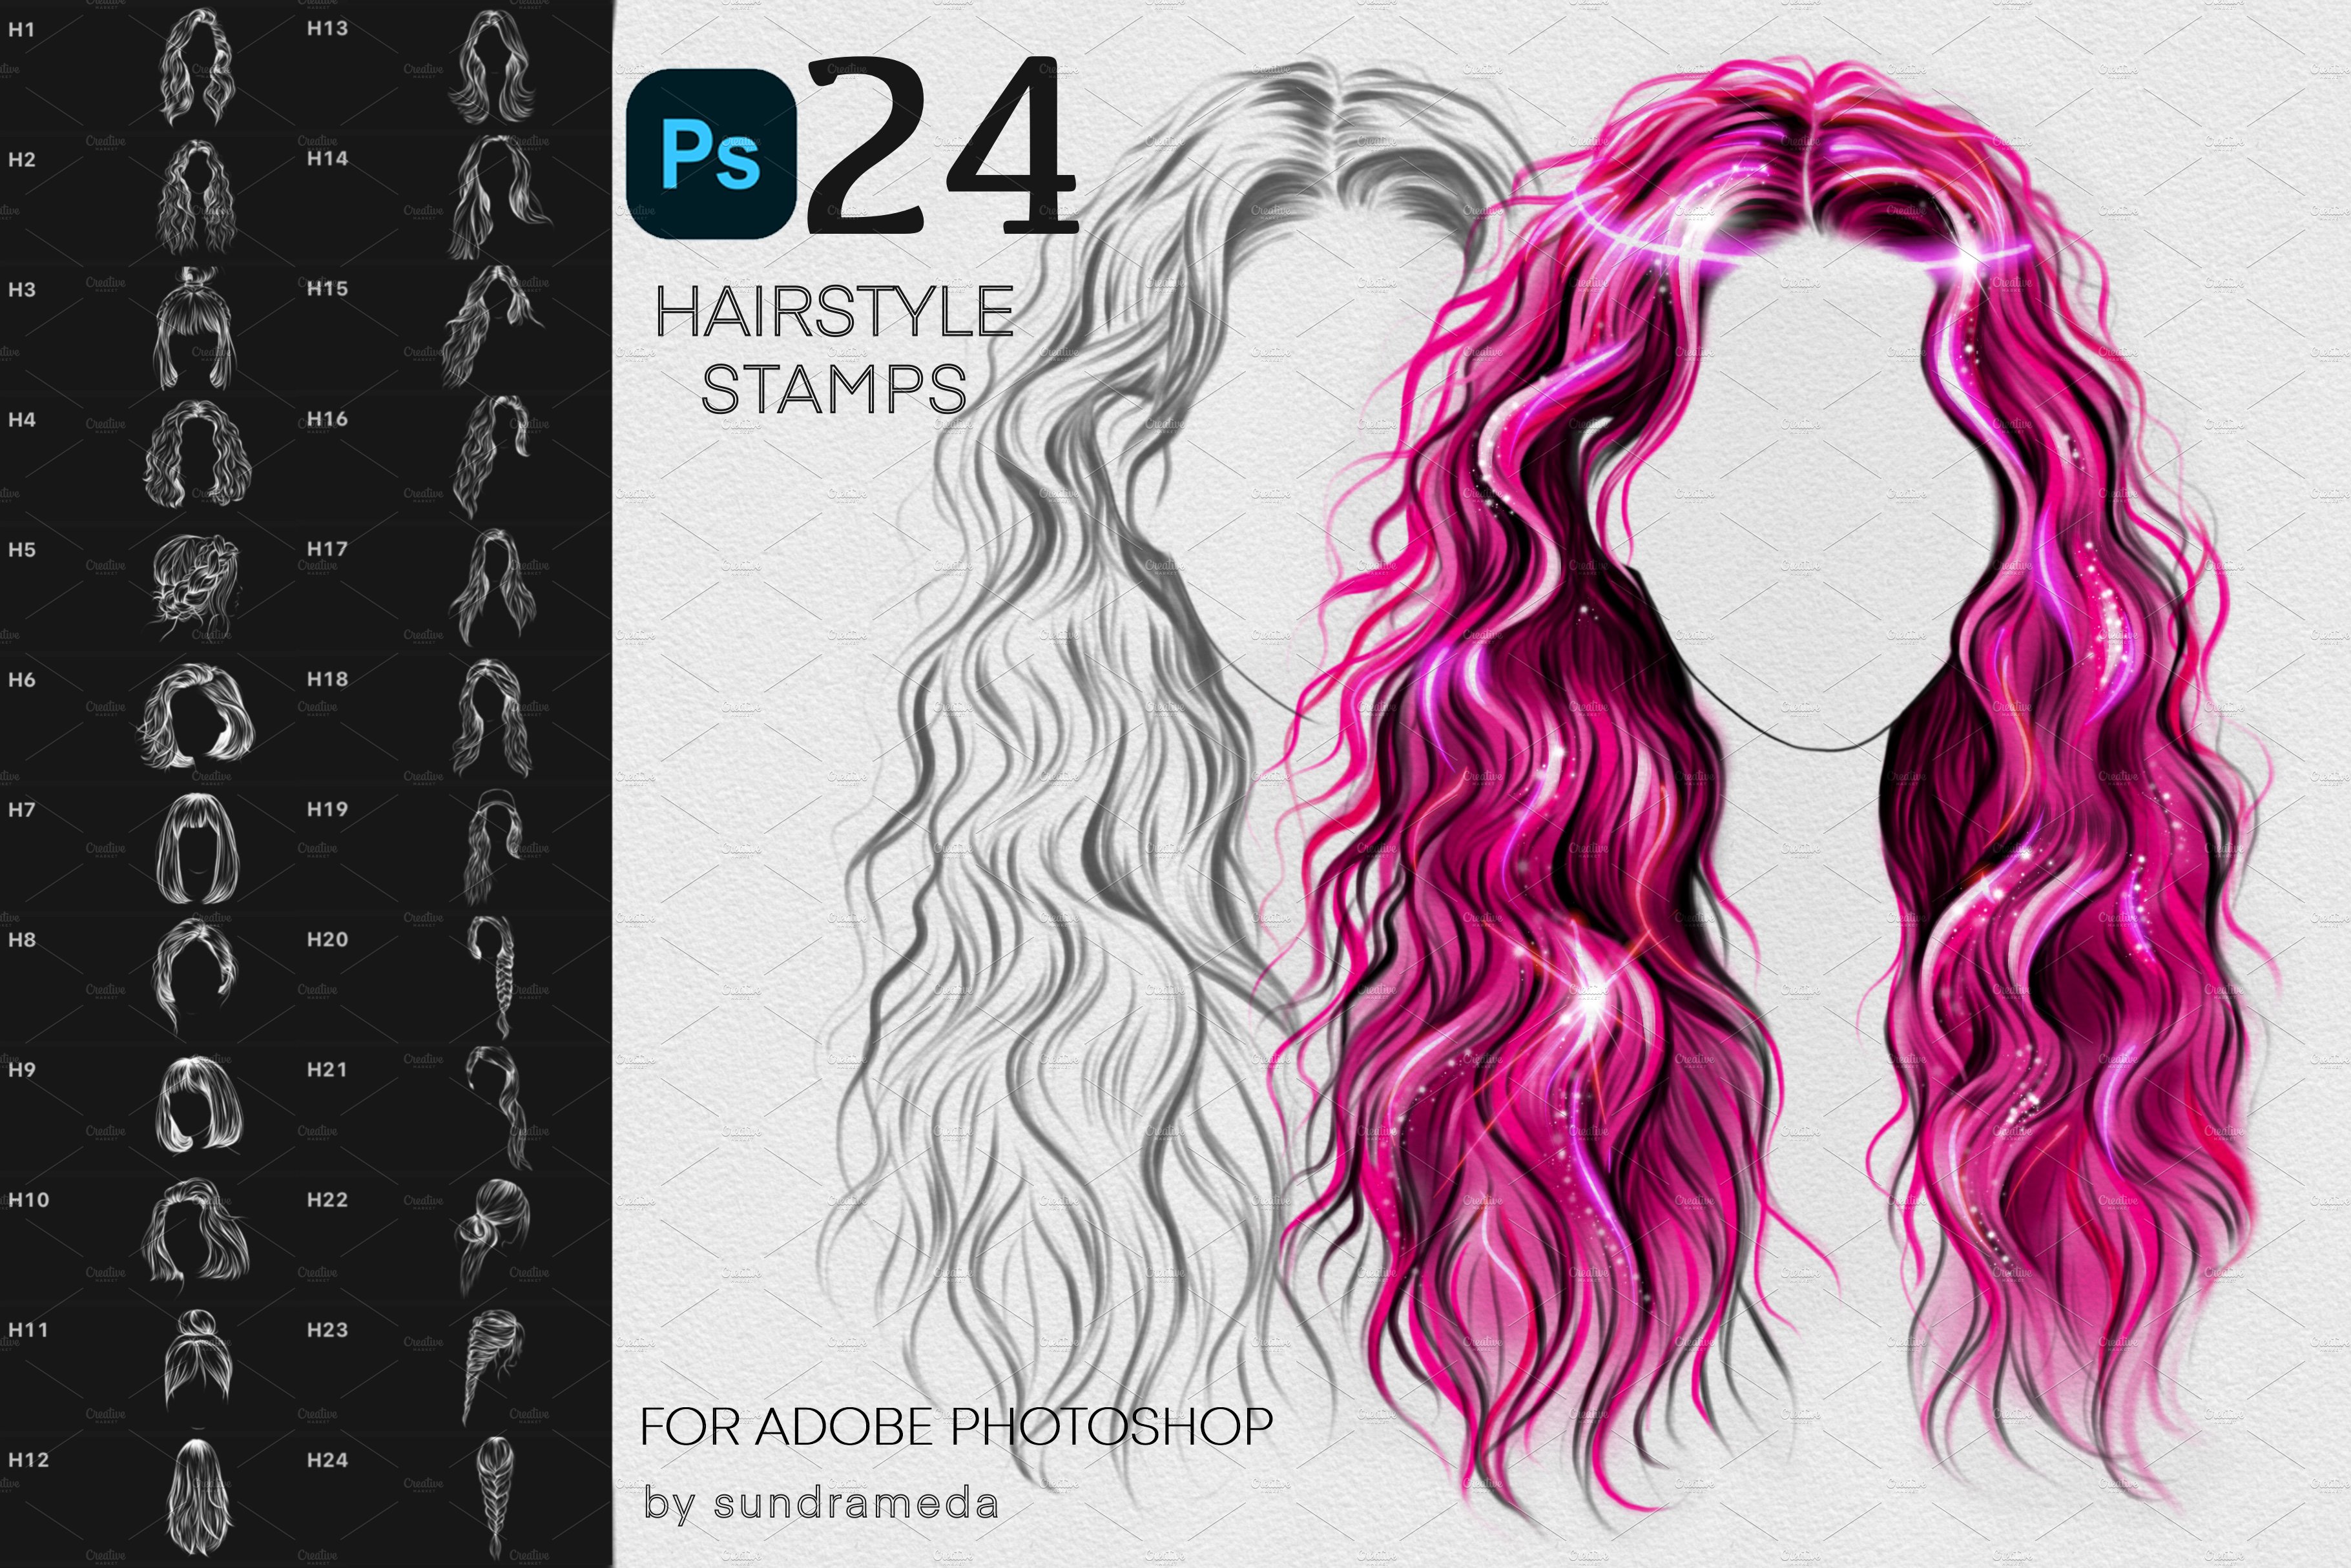 24 Hairstyle Stamp Brushes Photoshopcover image.